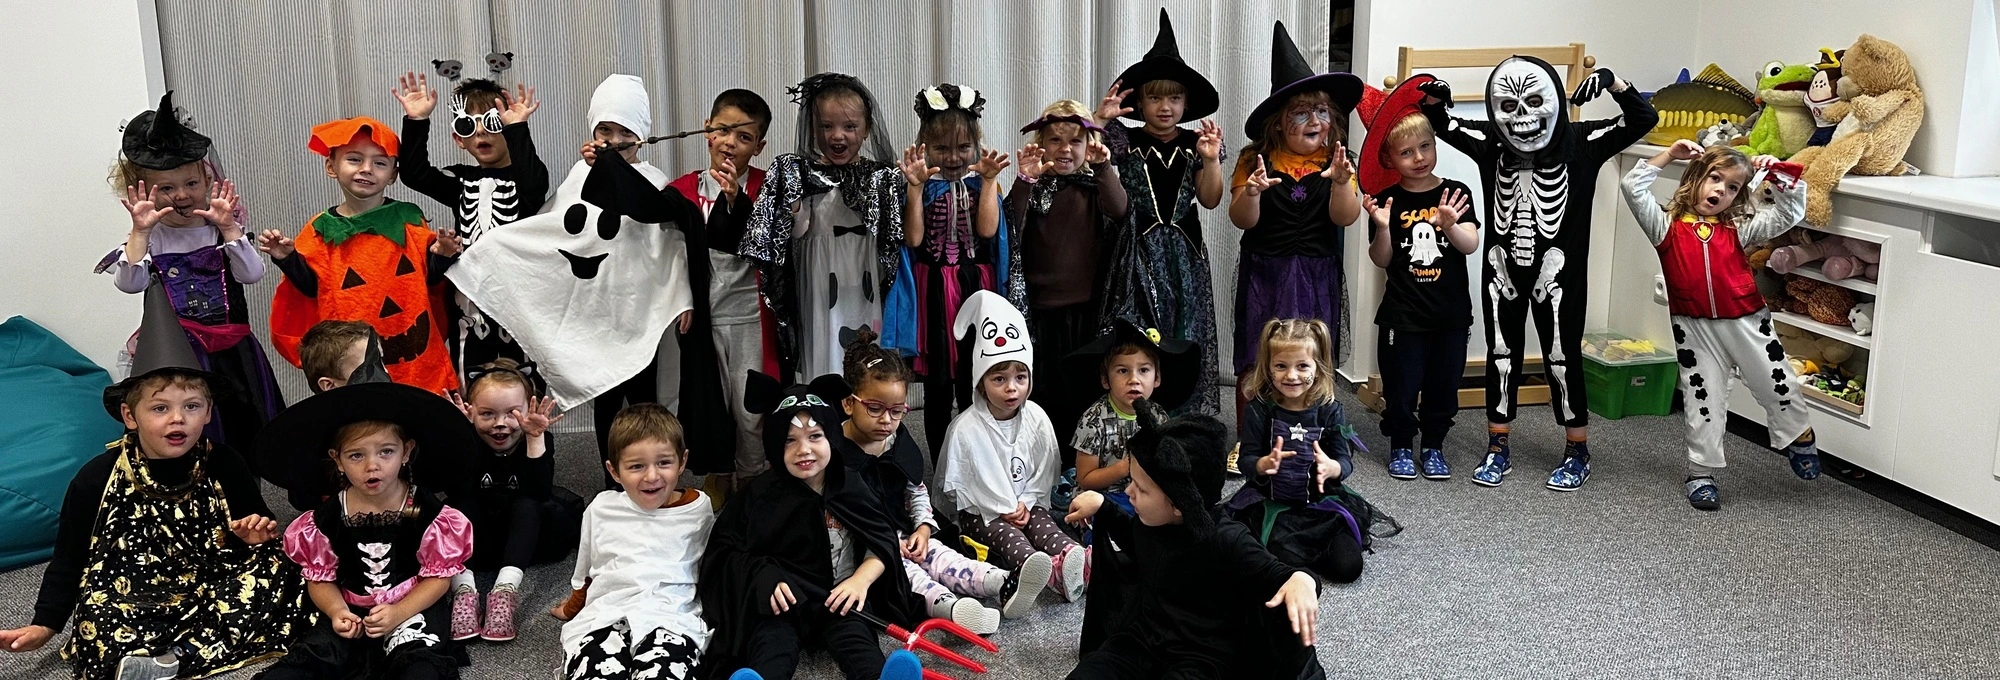 Děti ve školce s Halloweenskými kostými